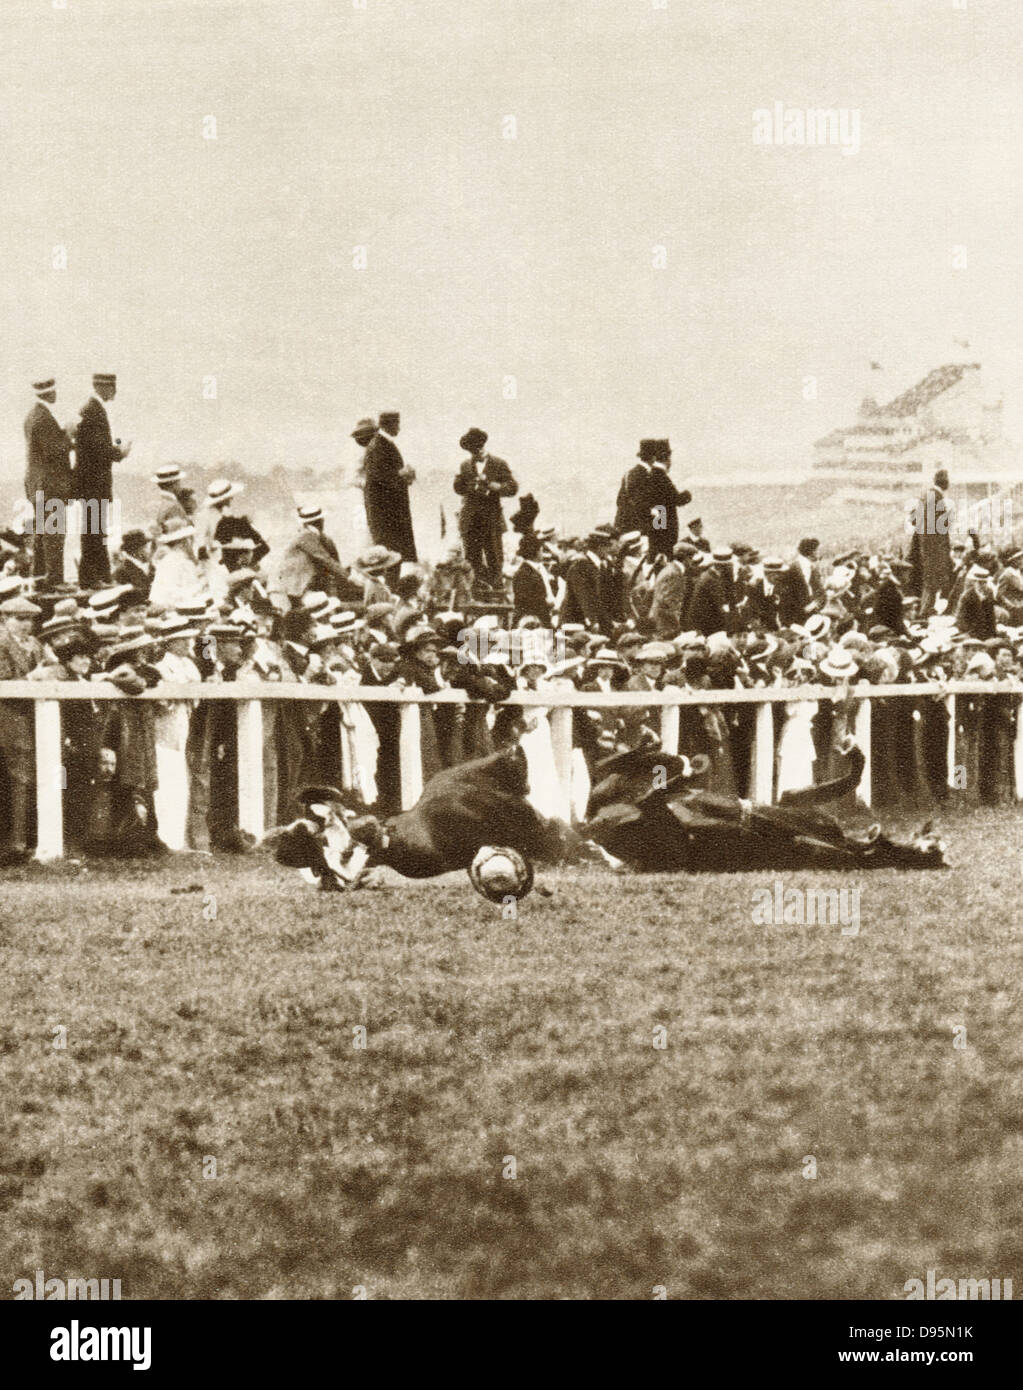 Emily Davison (1872-1913) inglese suffragette, gettando se stessa nella parte anteriore del George V di cavallo Anmer durante 1913 Derby nel tentativo di ottenere un riconoscimento per la causa delle Suffragette. Morì delle sue ferite. Foto Stock